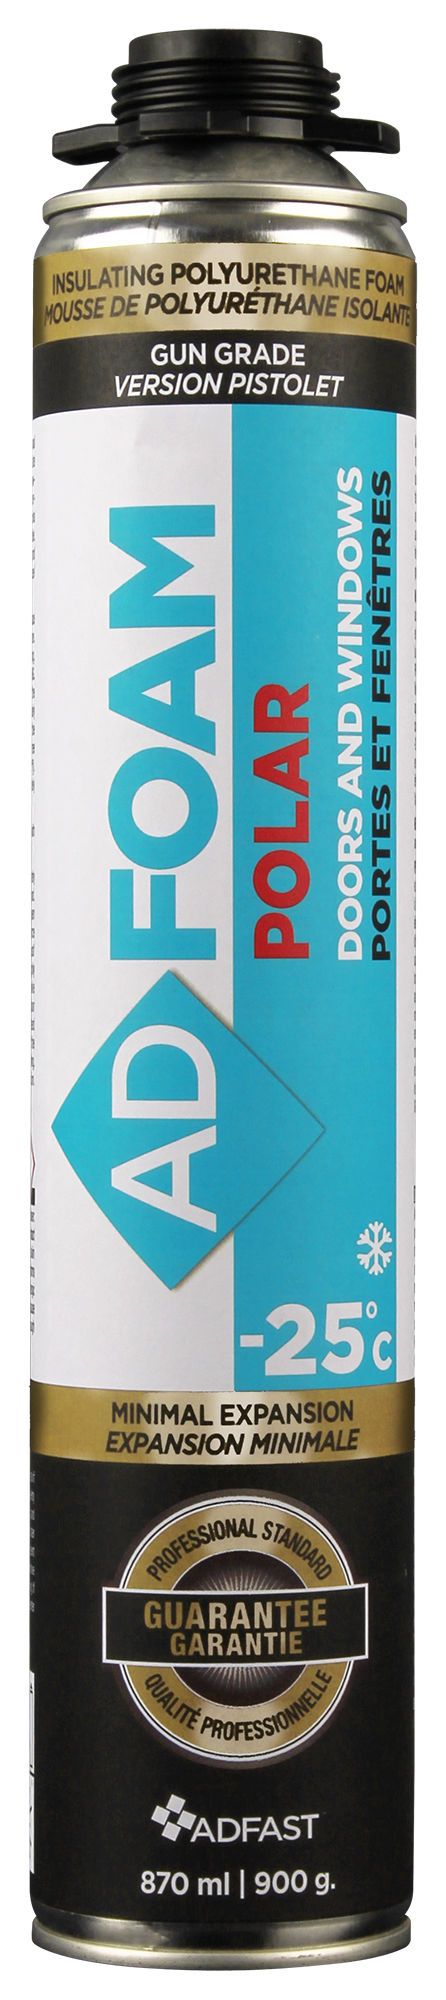 Mousse isolante polyuréthane Adfoam, Paille, 340 g